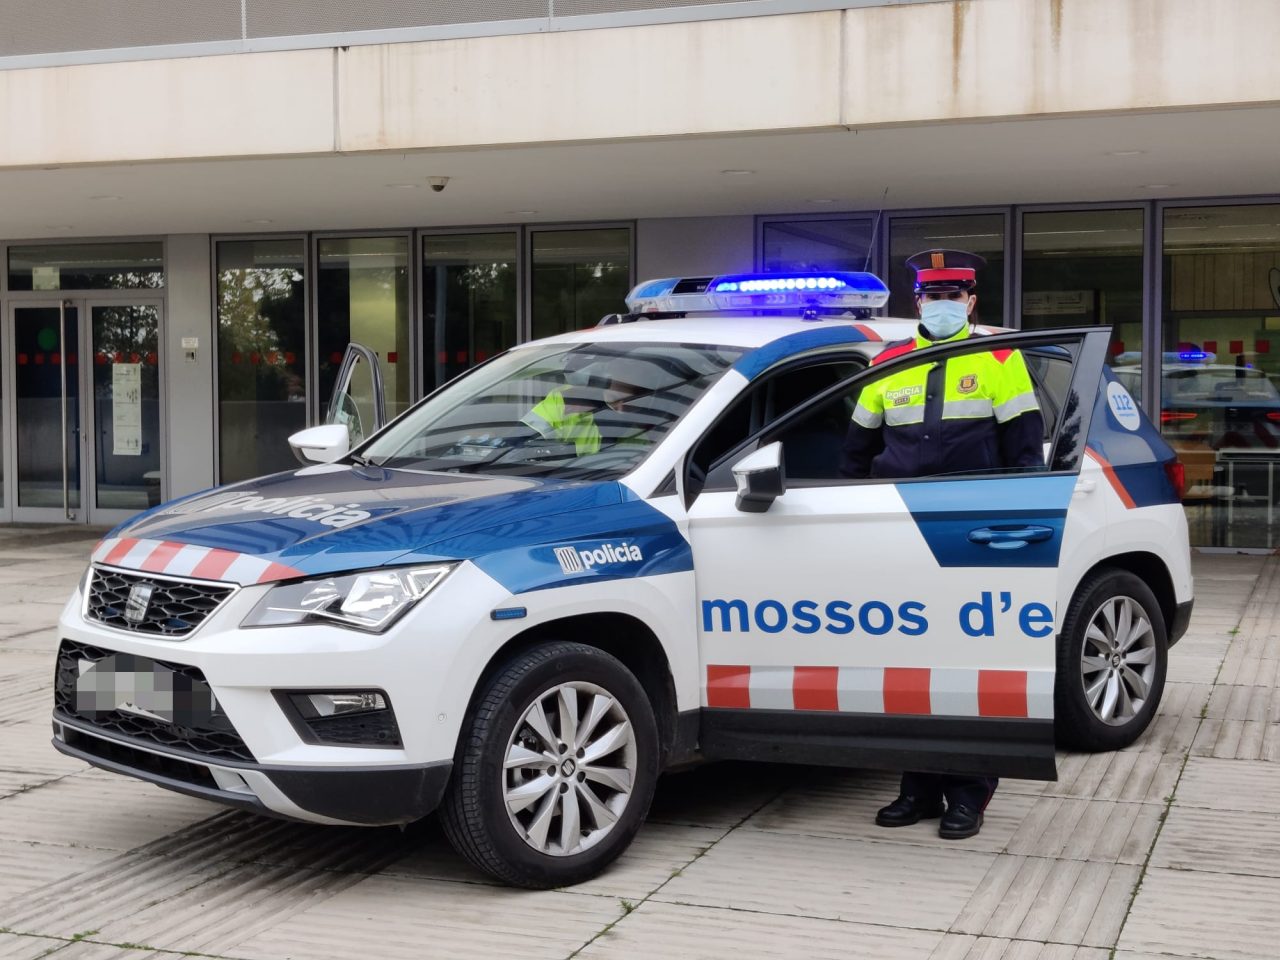 Cotxe-mossos-1280x960.jpg